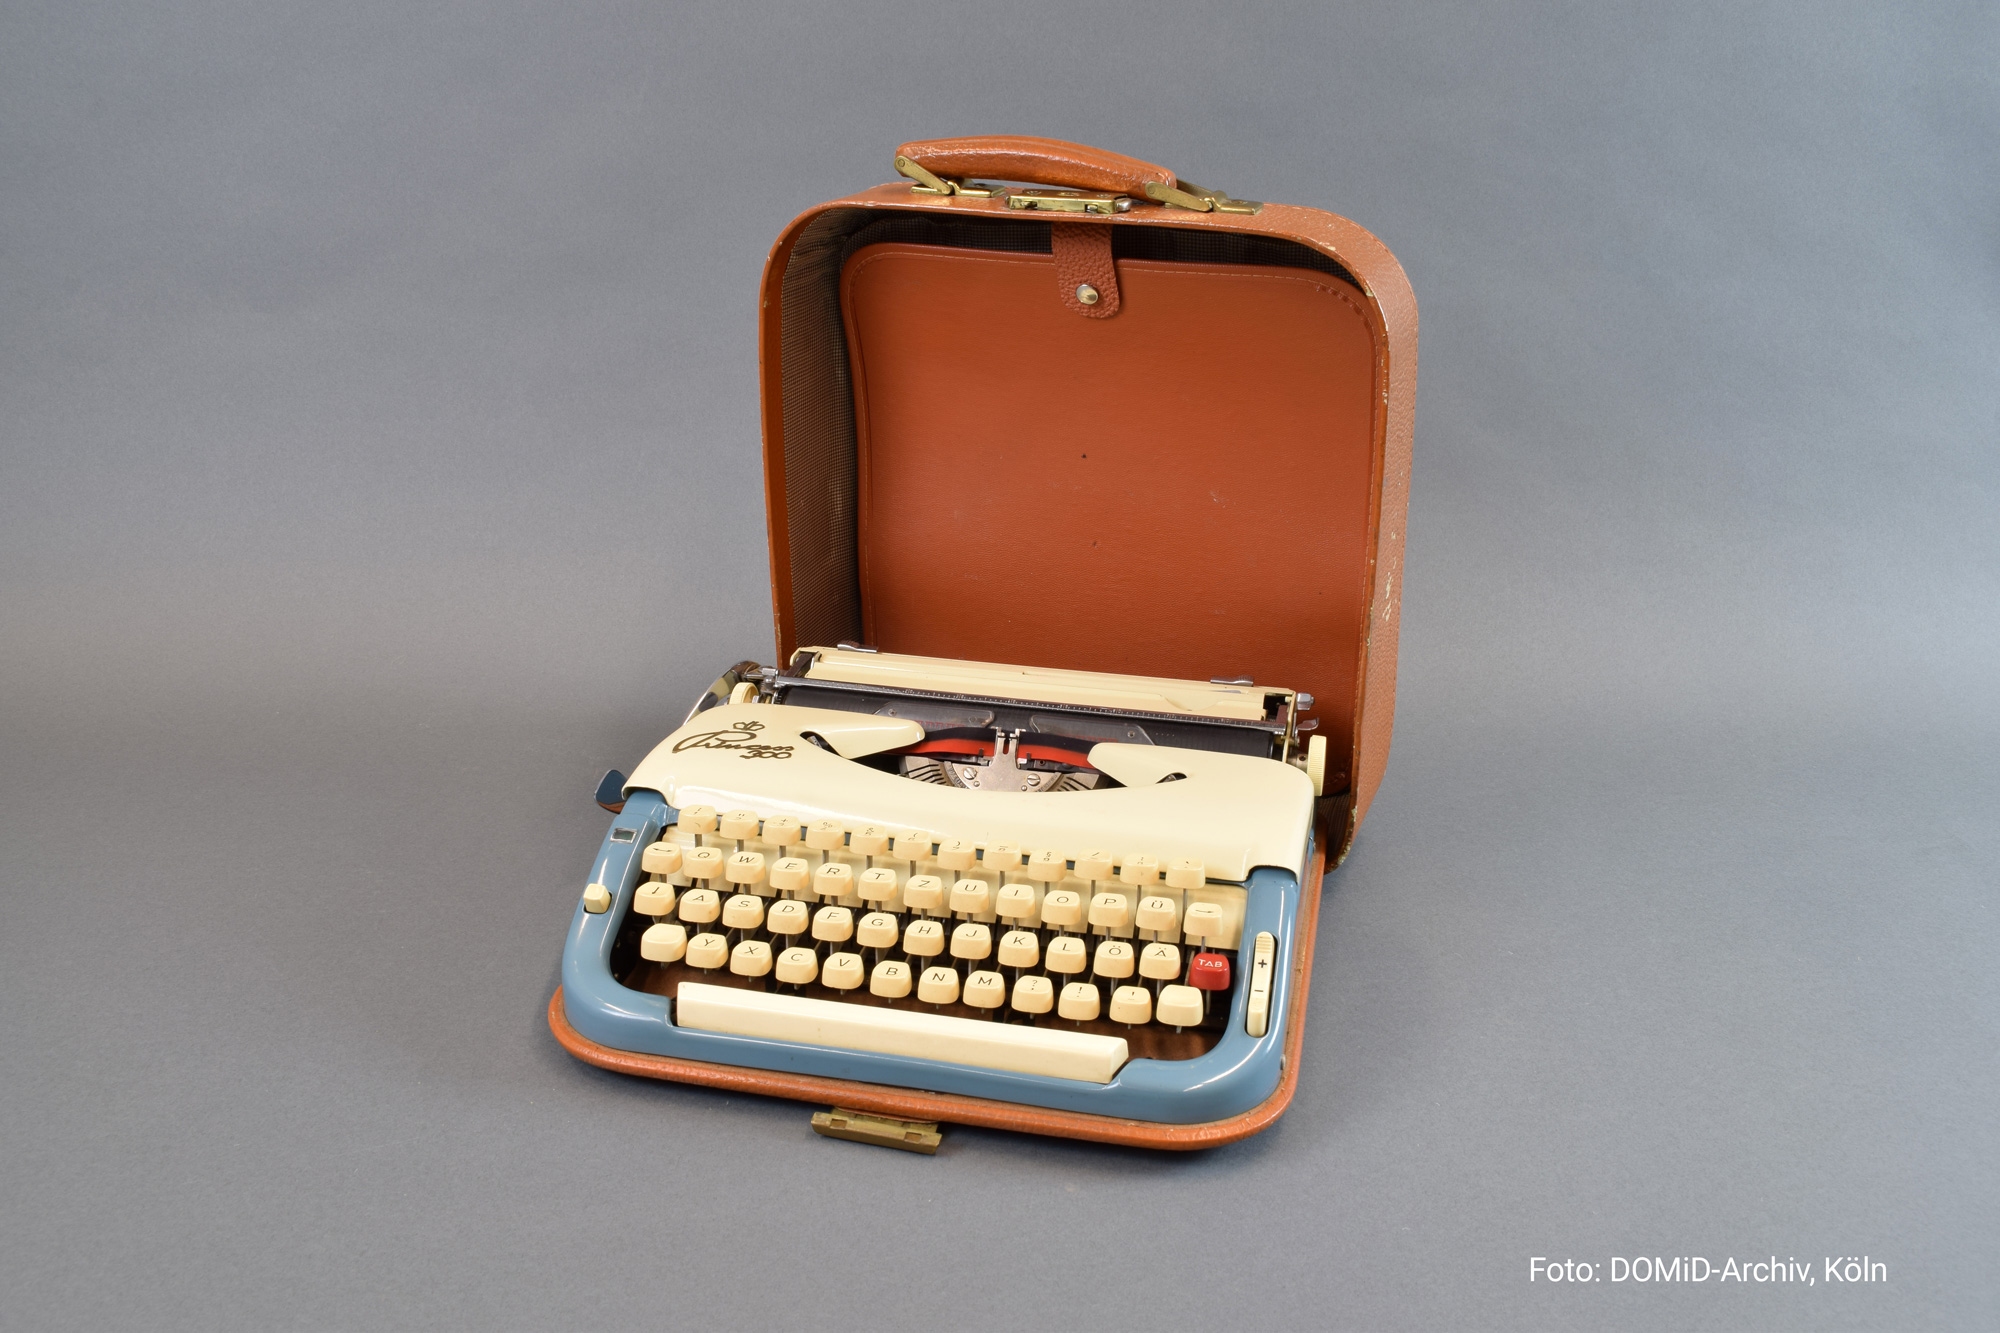 Die Reiseschreibmaschine von Theodor Wonja Michael aus den 1960er Jahren © DOMiD-Archiv, Köln